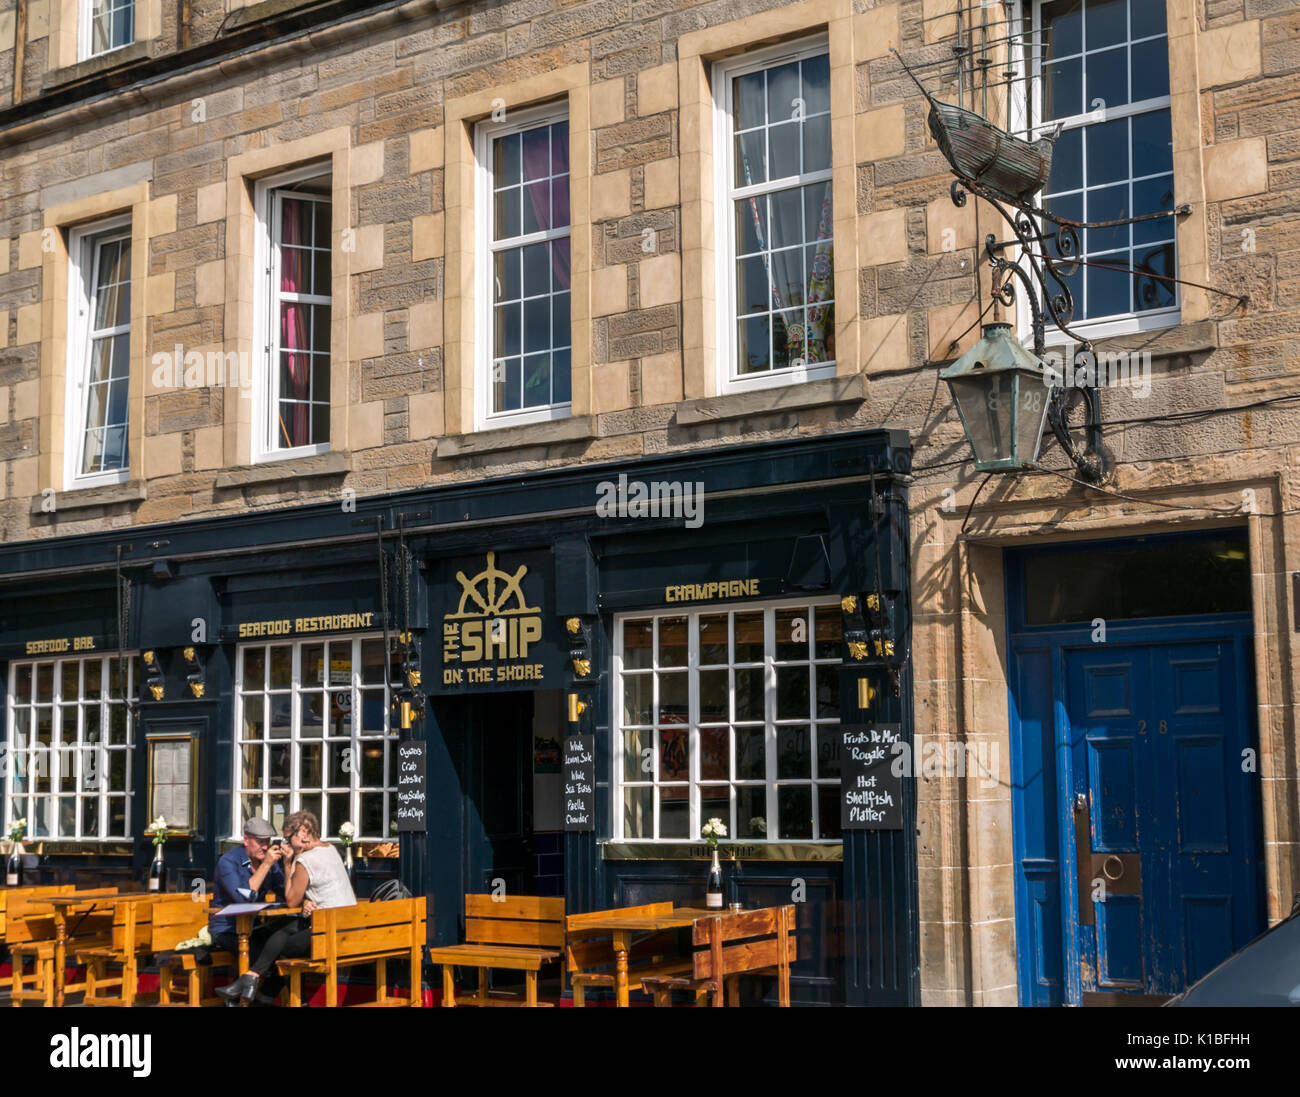 Leith Restaurant, das Schiff am Ufer, mit Ausharren Schiffsmodell Emblem an der Wand und ein paar sitzen draußen in der Sonne, Edinburgh, Schottland, Großbritannien Stockfoto